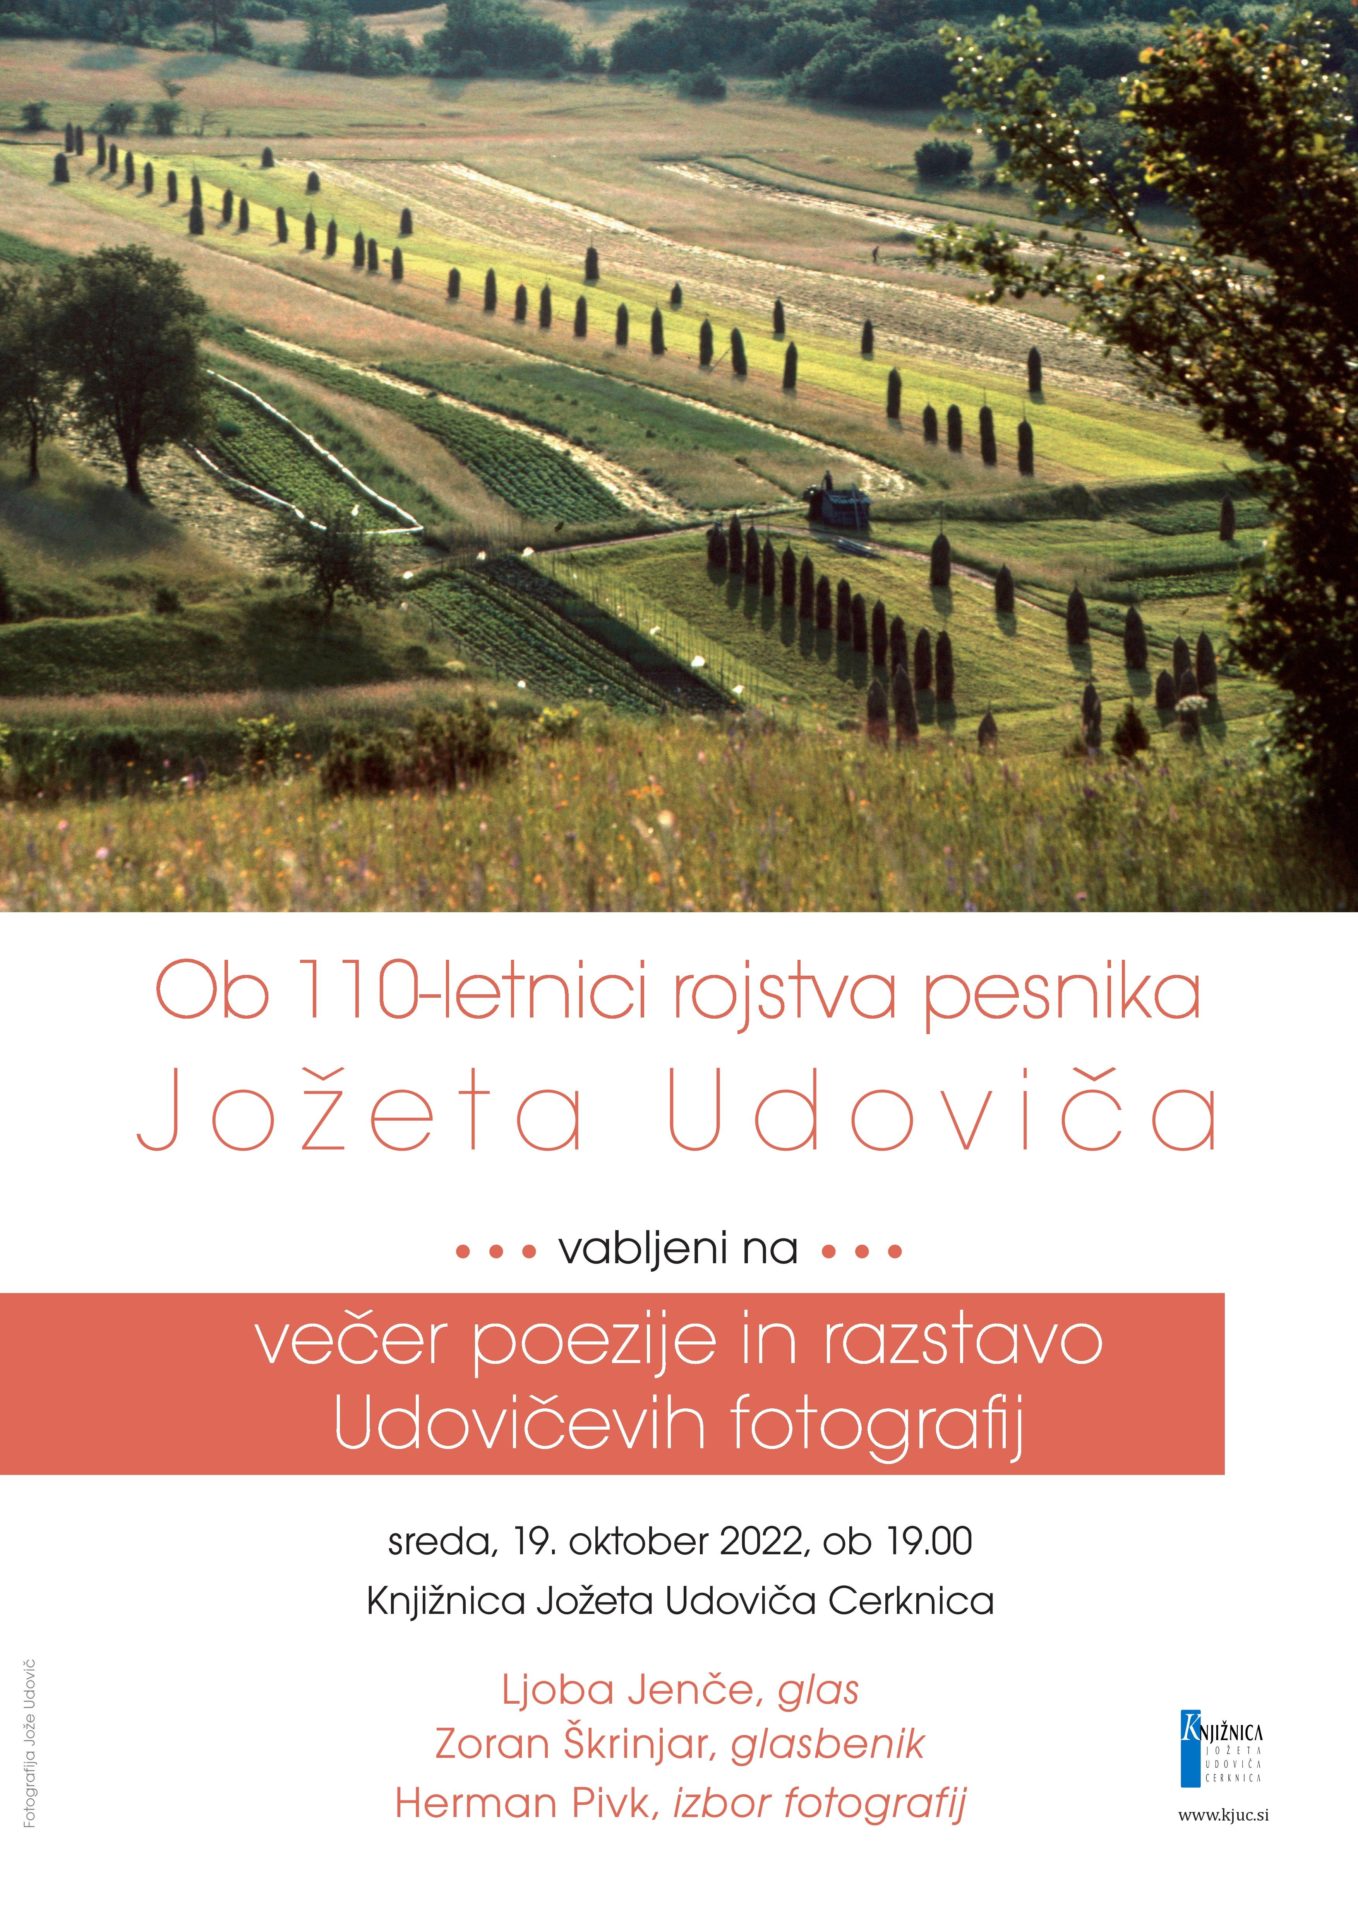 DN 1322 2022 plakat A3 Razstava Udovic web page 001 - Večer poezije in razstava Udovičevih fotografij ob 110-letnici rojstva pesnika Jožeta Udoviča